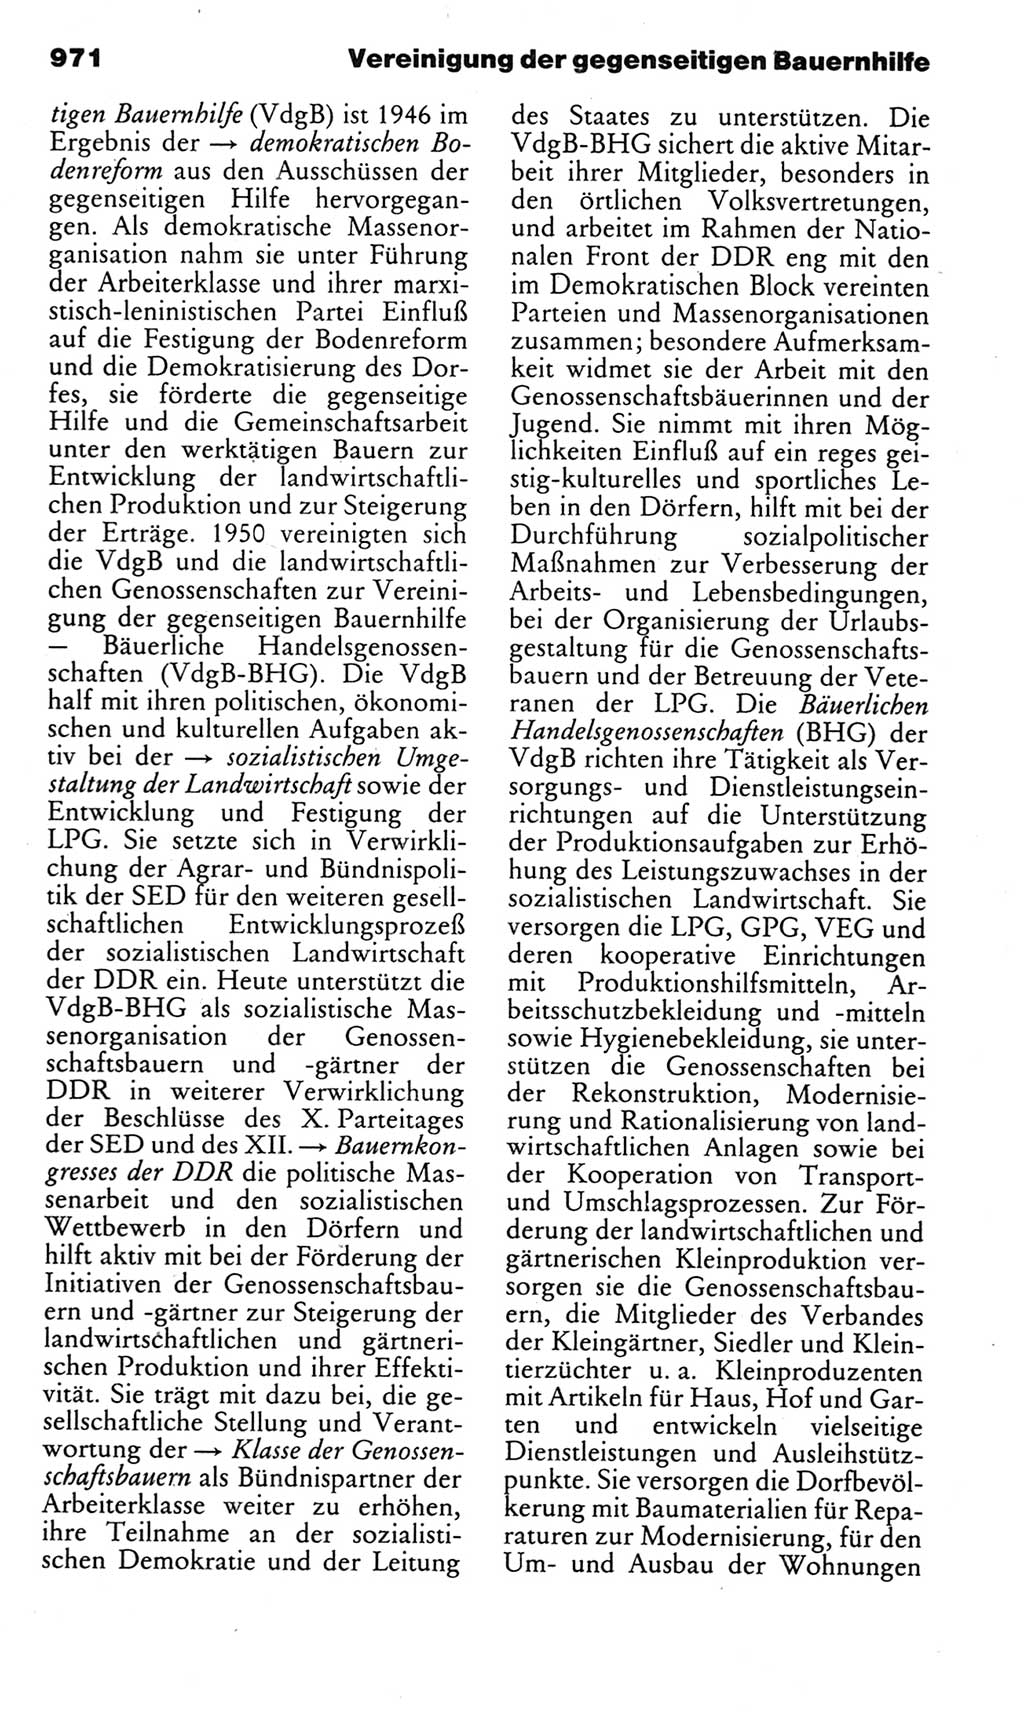 Kleines politisches Wörterbuch [Deutsche Demokratische Republik (DDR)] 1983, Seite 971 (Kl. pol. Wb. DDR 1983, S. 971)